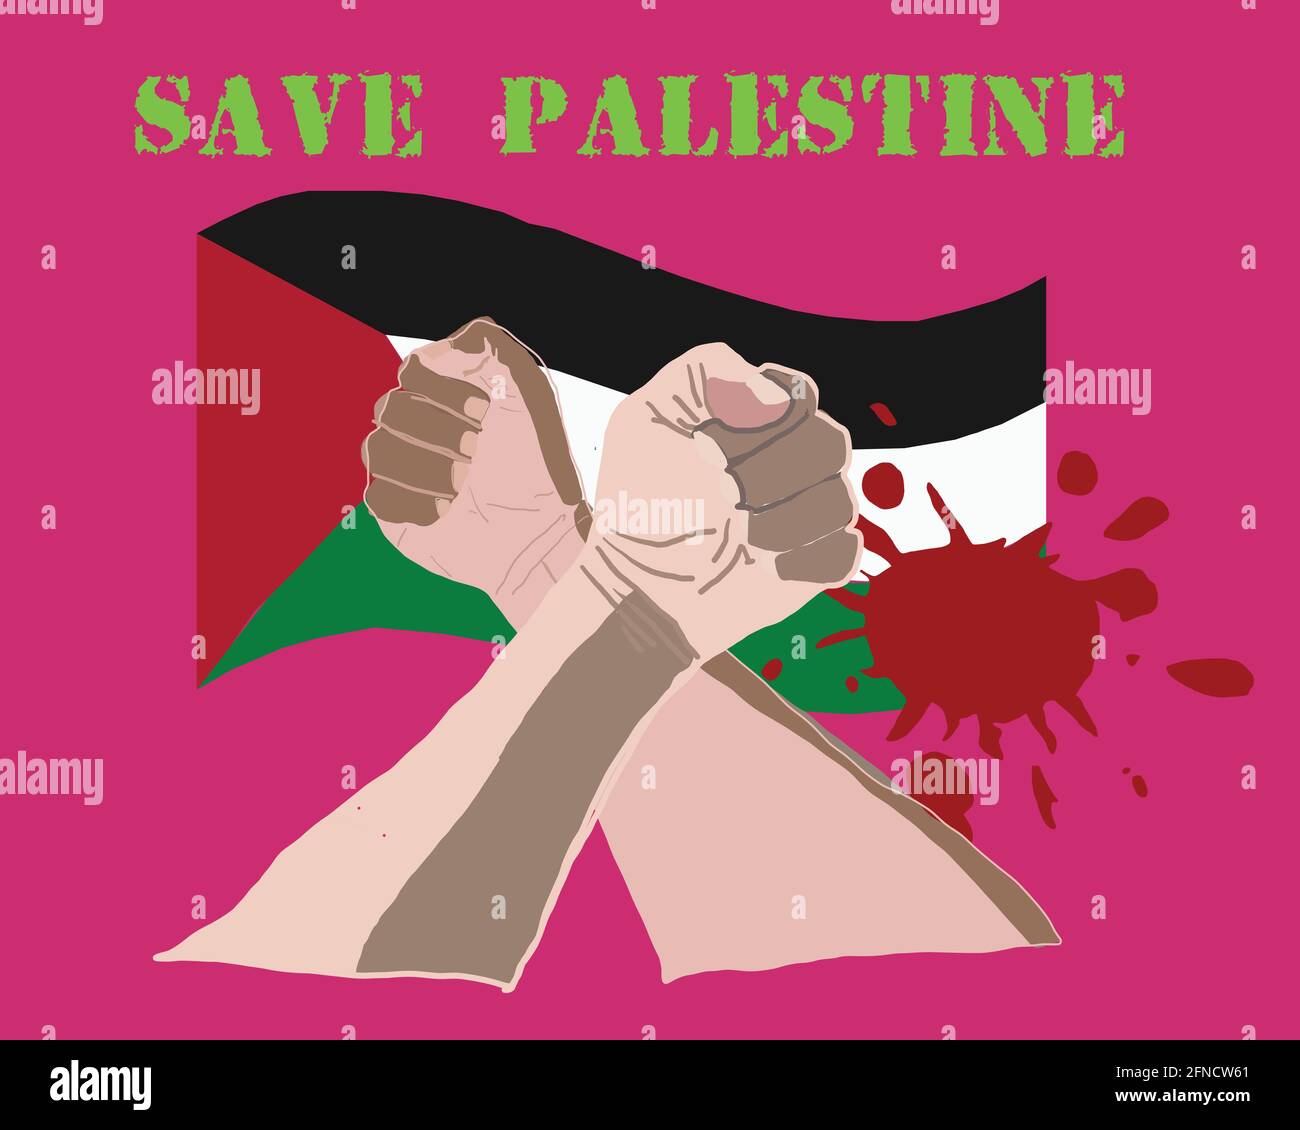 Palestine Lives Matter Bewegung protestiert für Anti-Rassismus und Gleiche Menschenrechte Stock Vektor